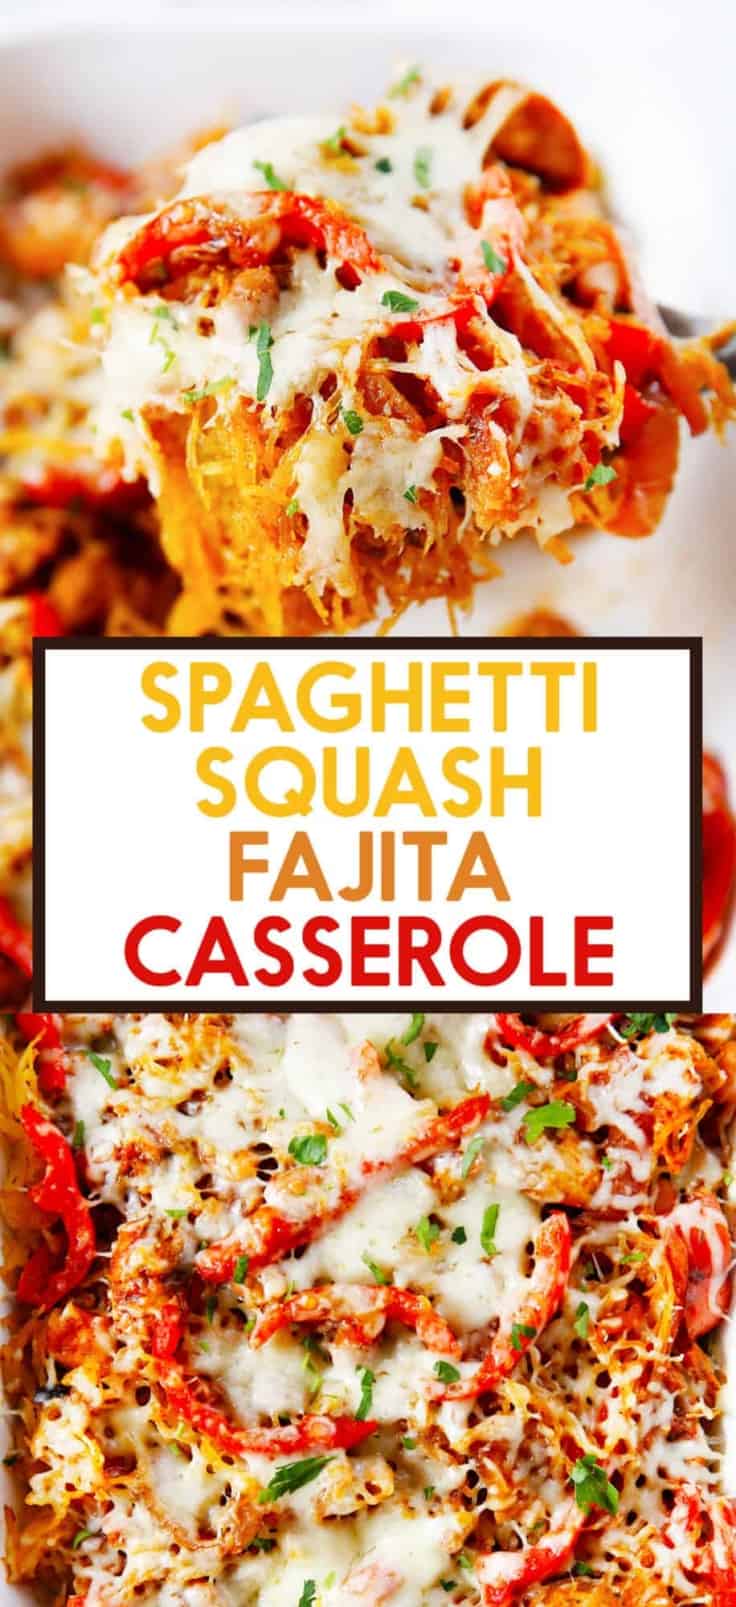 Fajita Spaghetti Squash Casserole